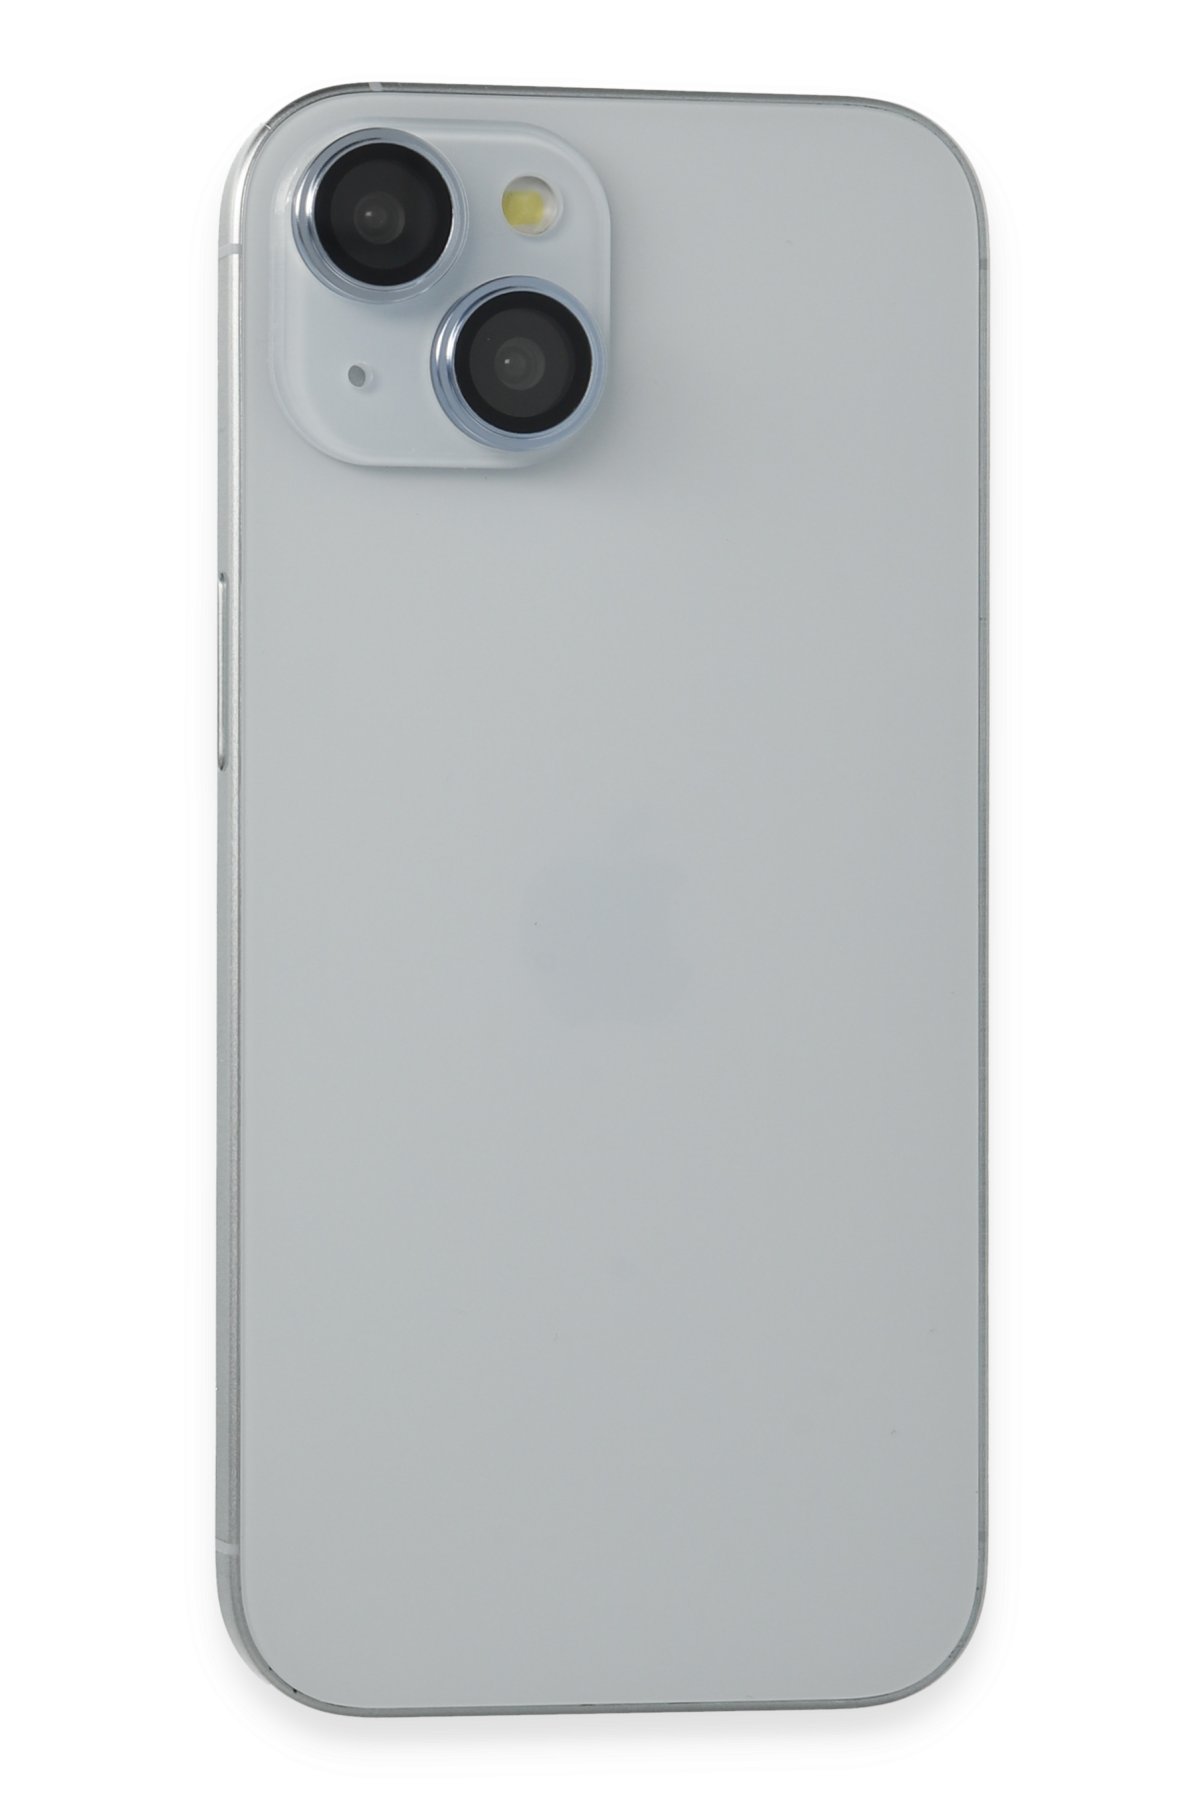 Joko iPhone 15 Plus Joko Magic 5D Cam